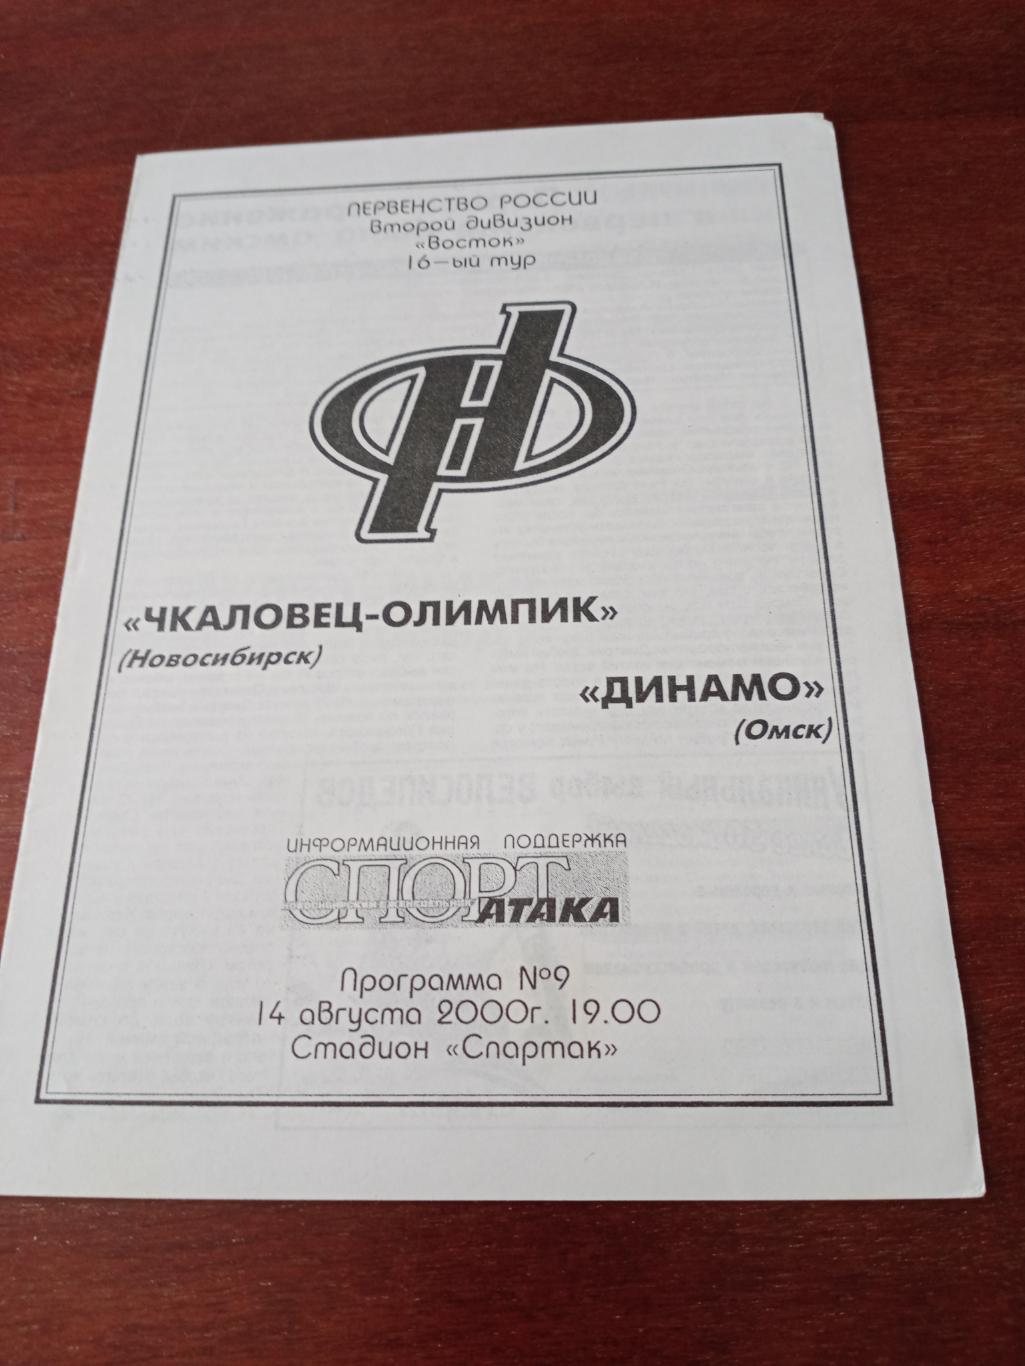 Чкаловец-Олимпик Новосибирск - Динамо Омск. 14 августа 2000 год